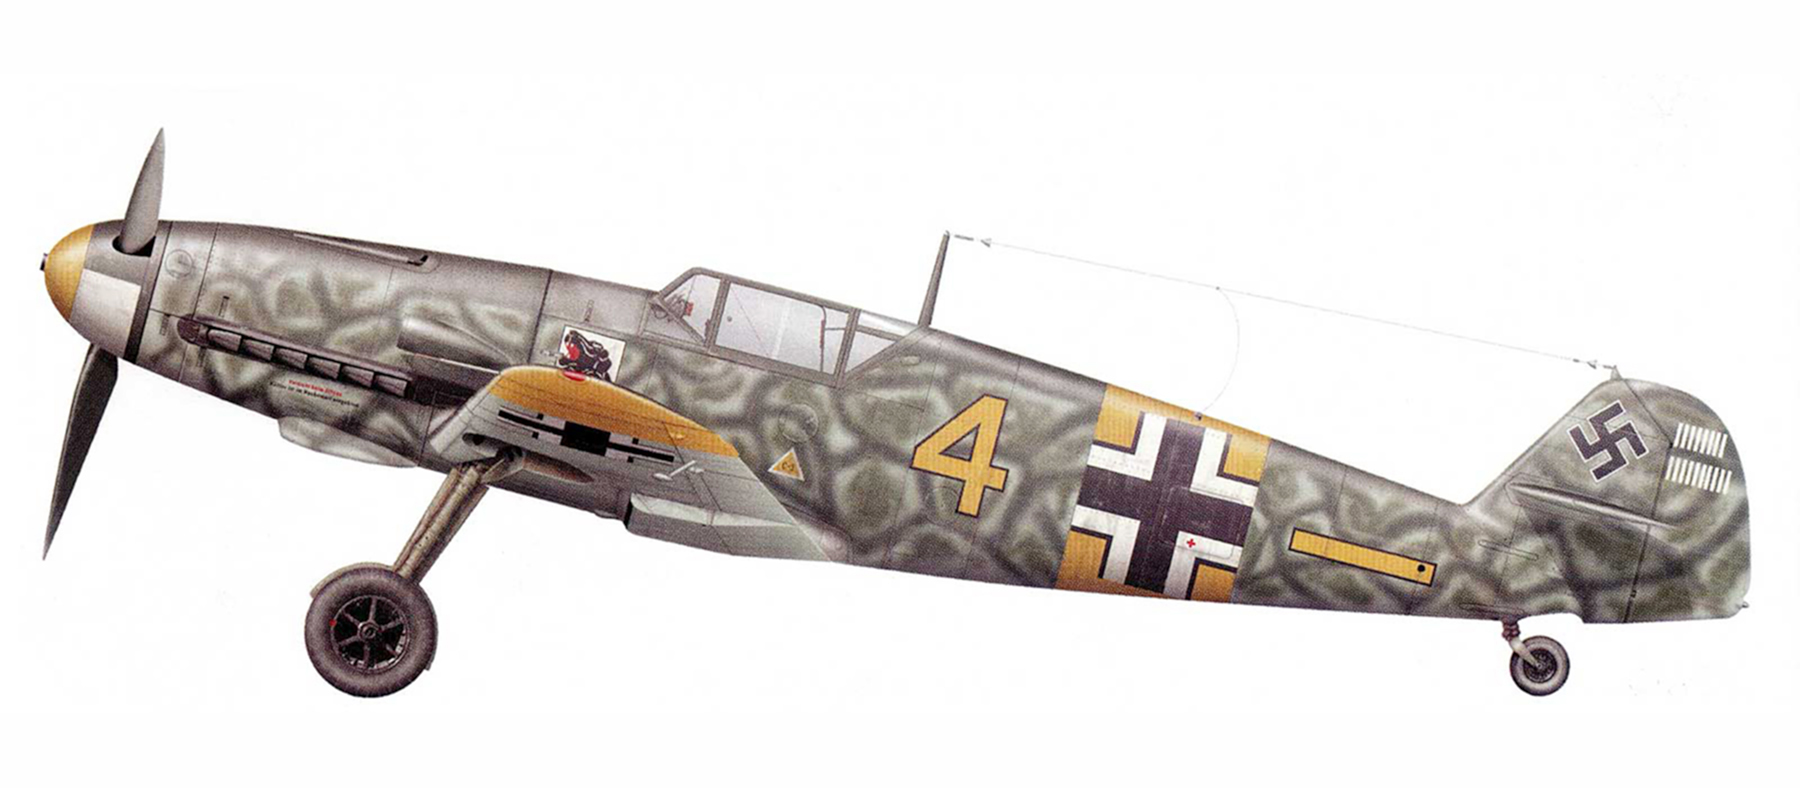 Messerschmitt Bf 109F2 6.JG54 Yellow 4 Hans Beisswenger Russia Jul 1941 0A